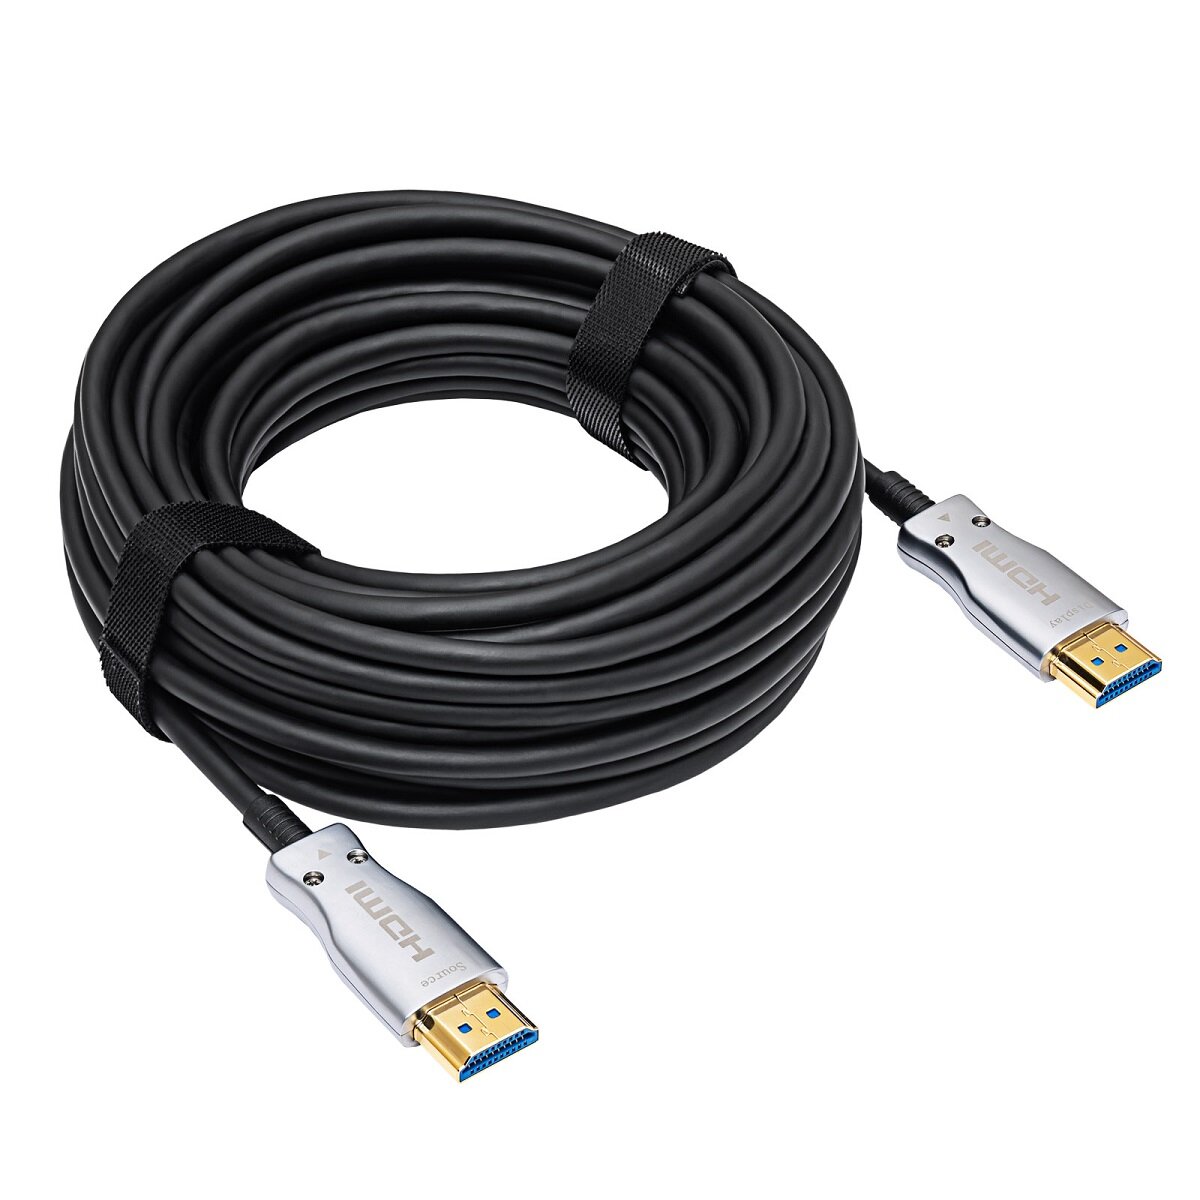 Kabel HDMI Akyga AK-HD-100L 2.1 10m widok na zwinięty kabel